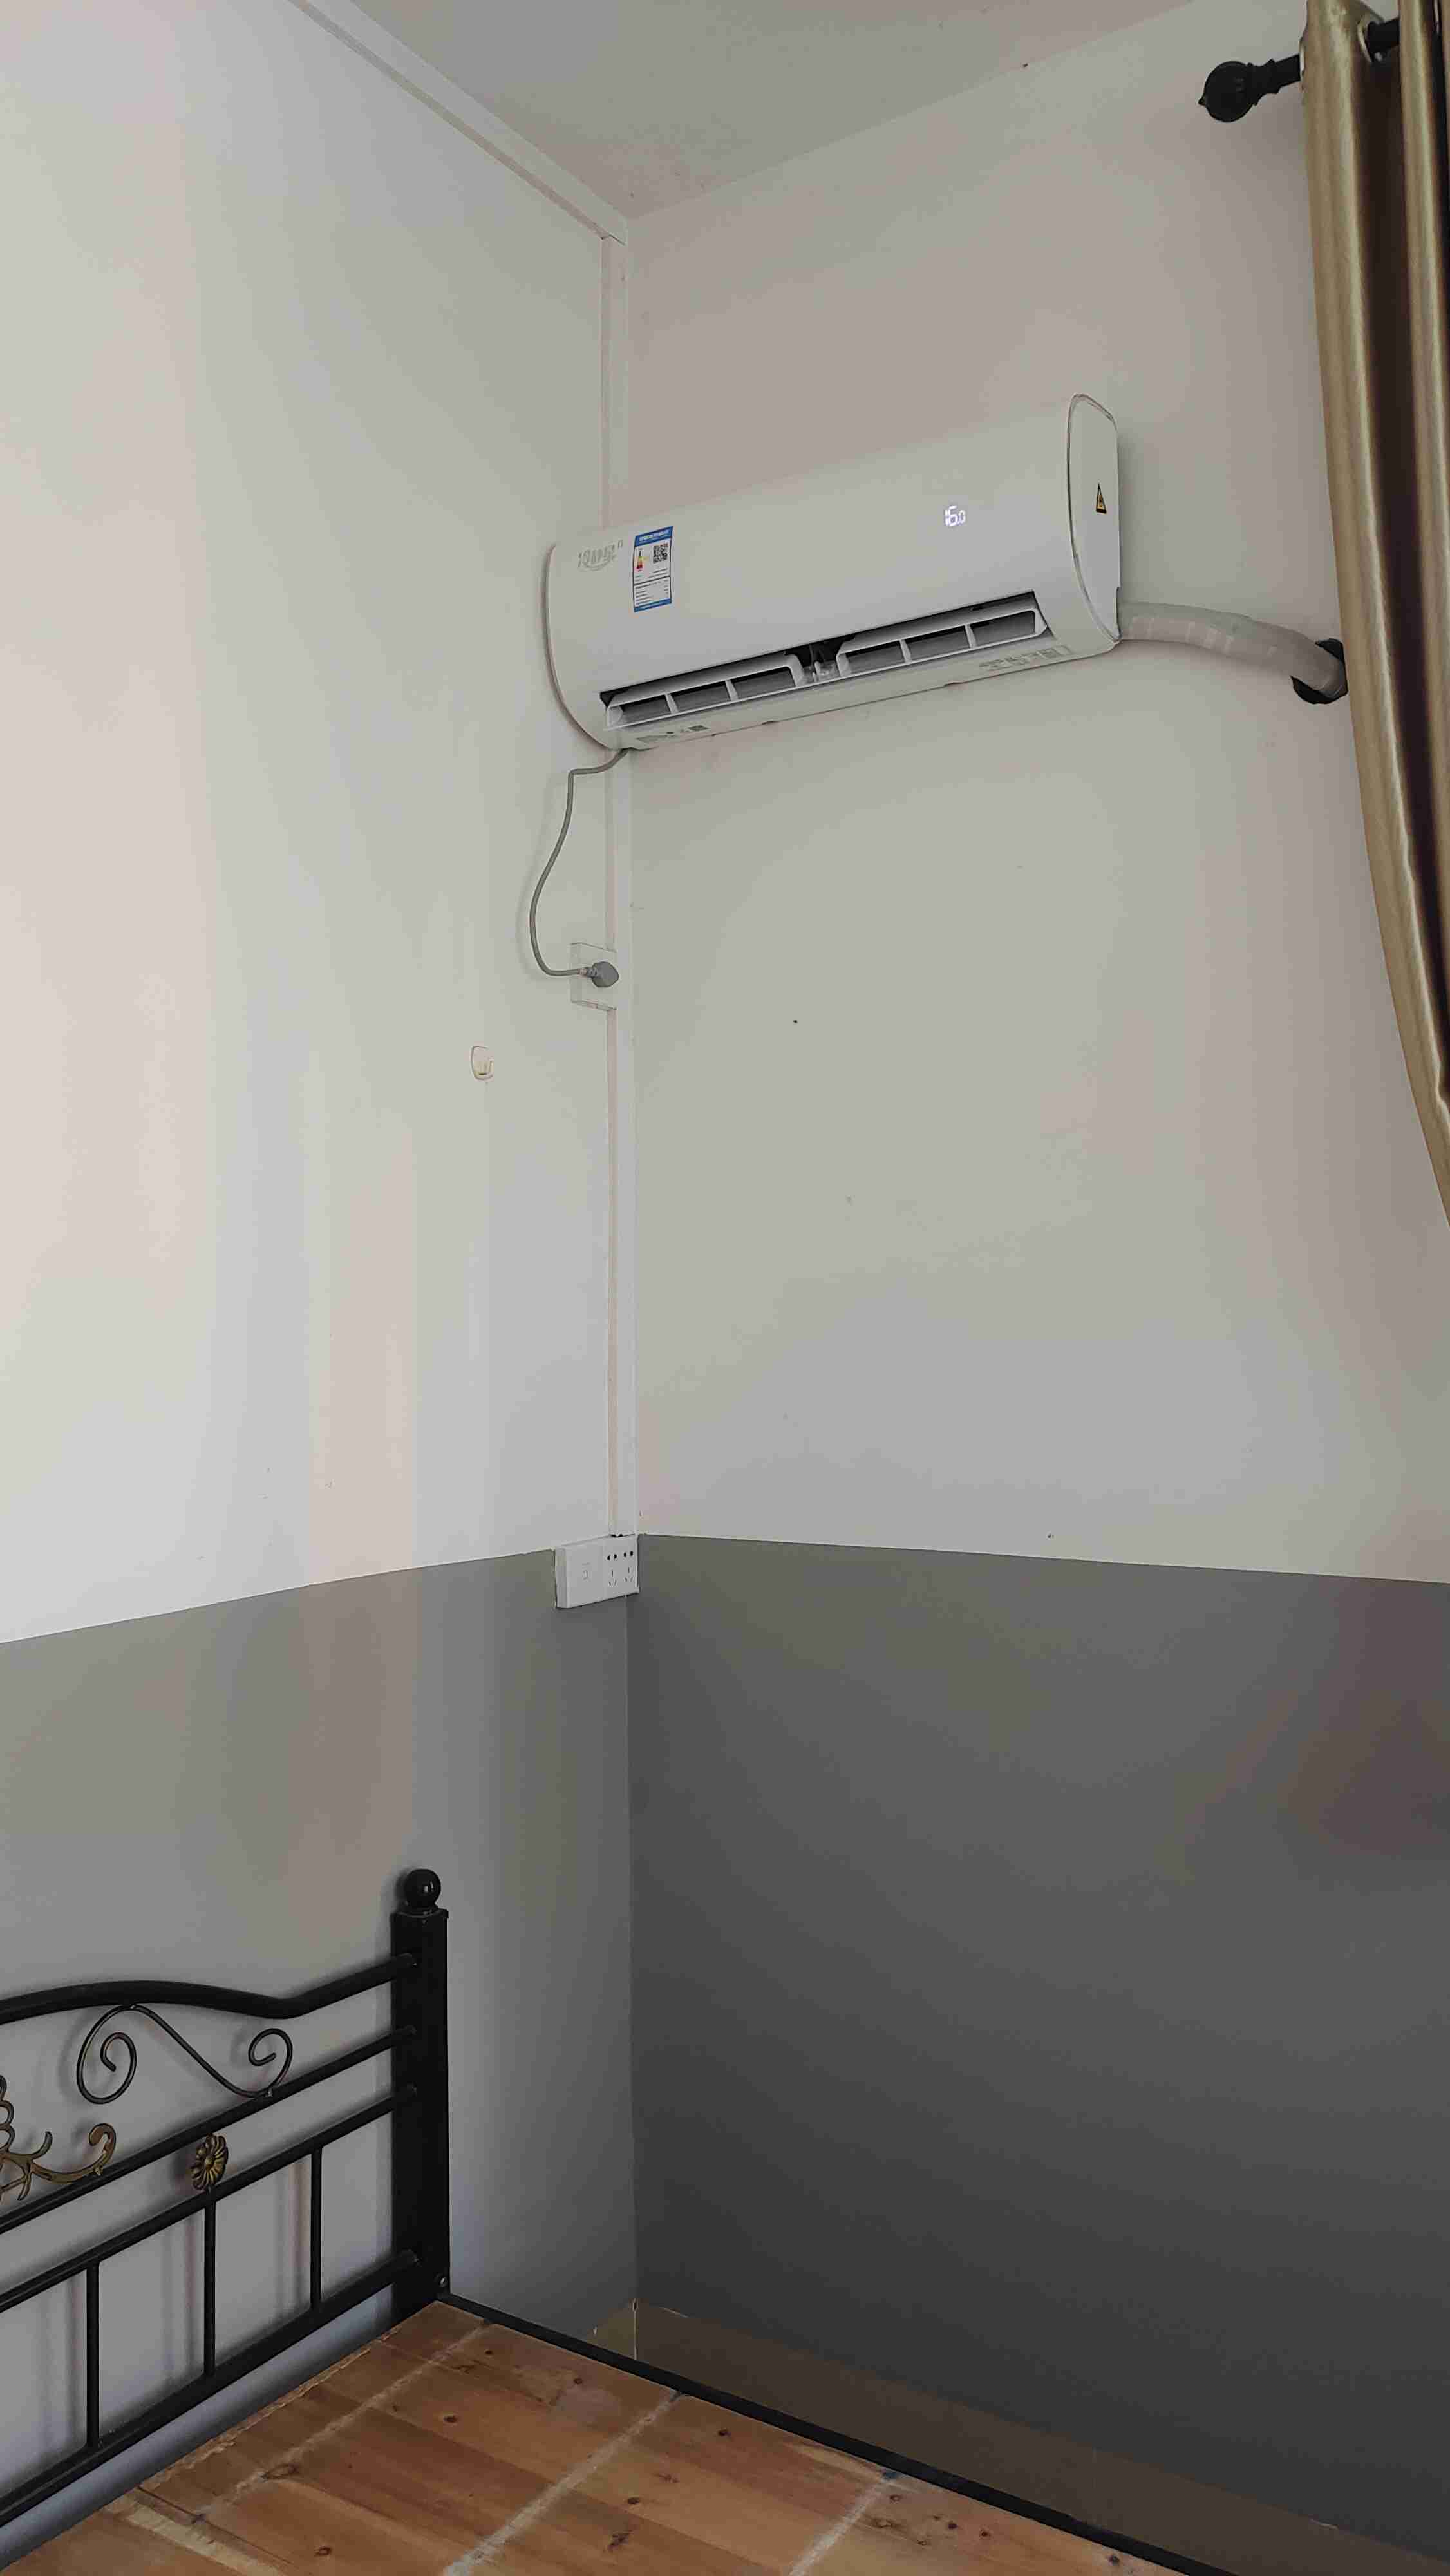 红军亭周边单间配套出租有独立卫生间热水器空调橱柜抽油烟机床铺(图7)